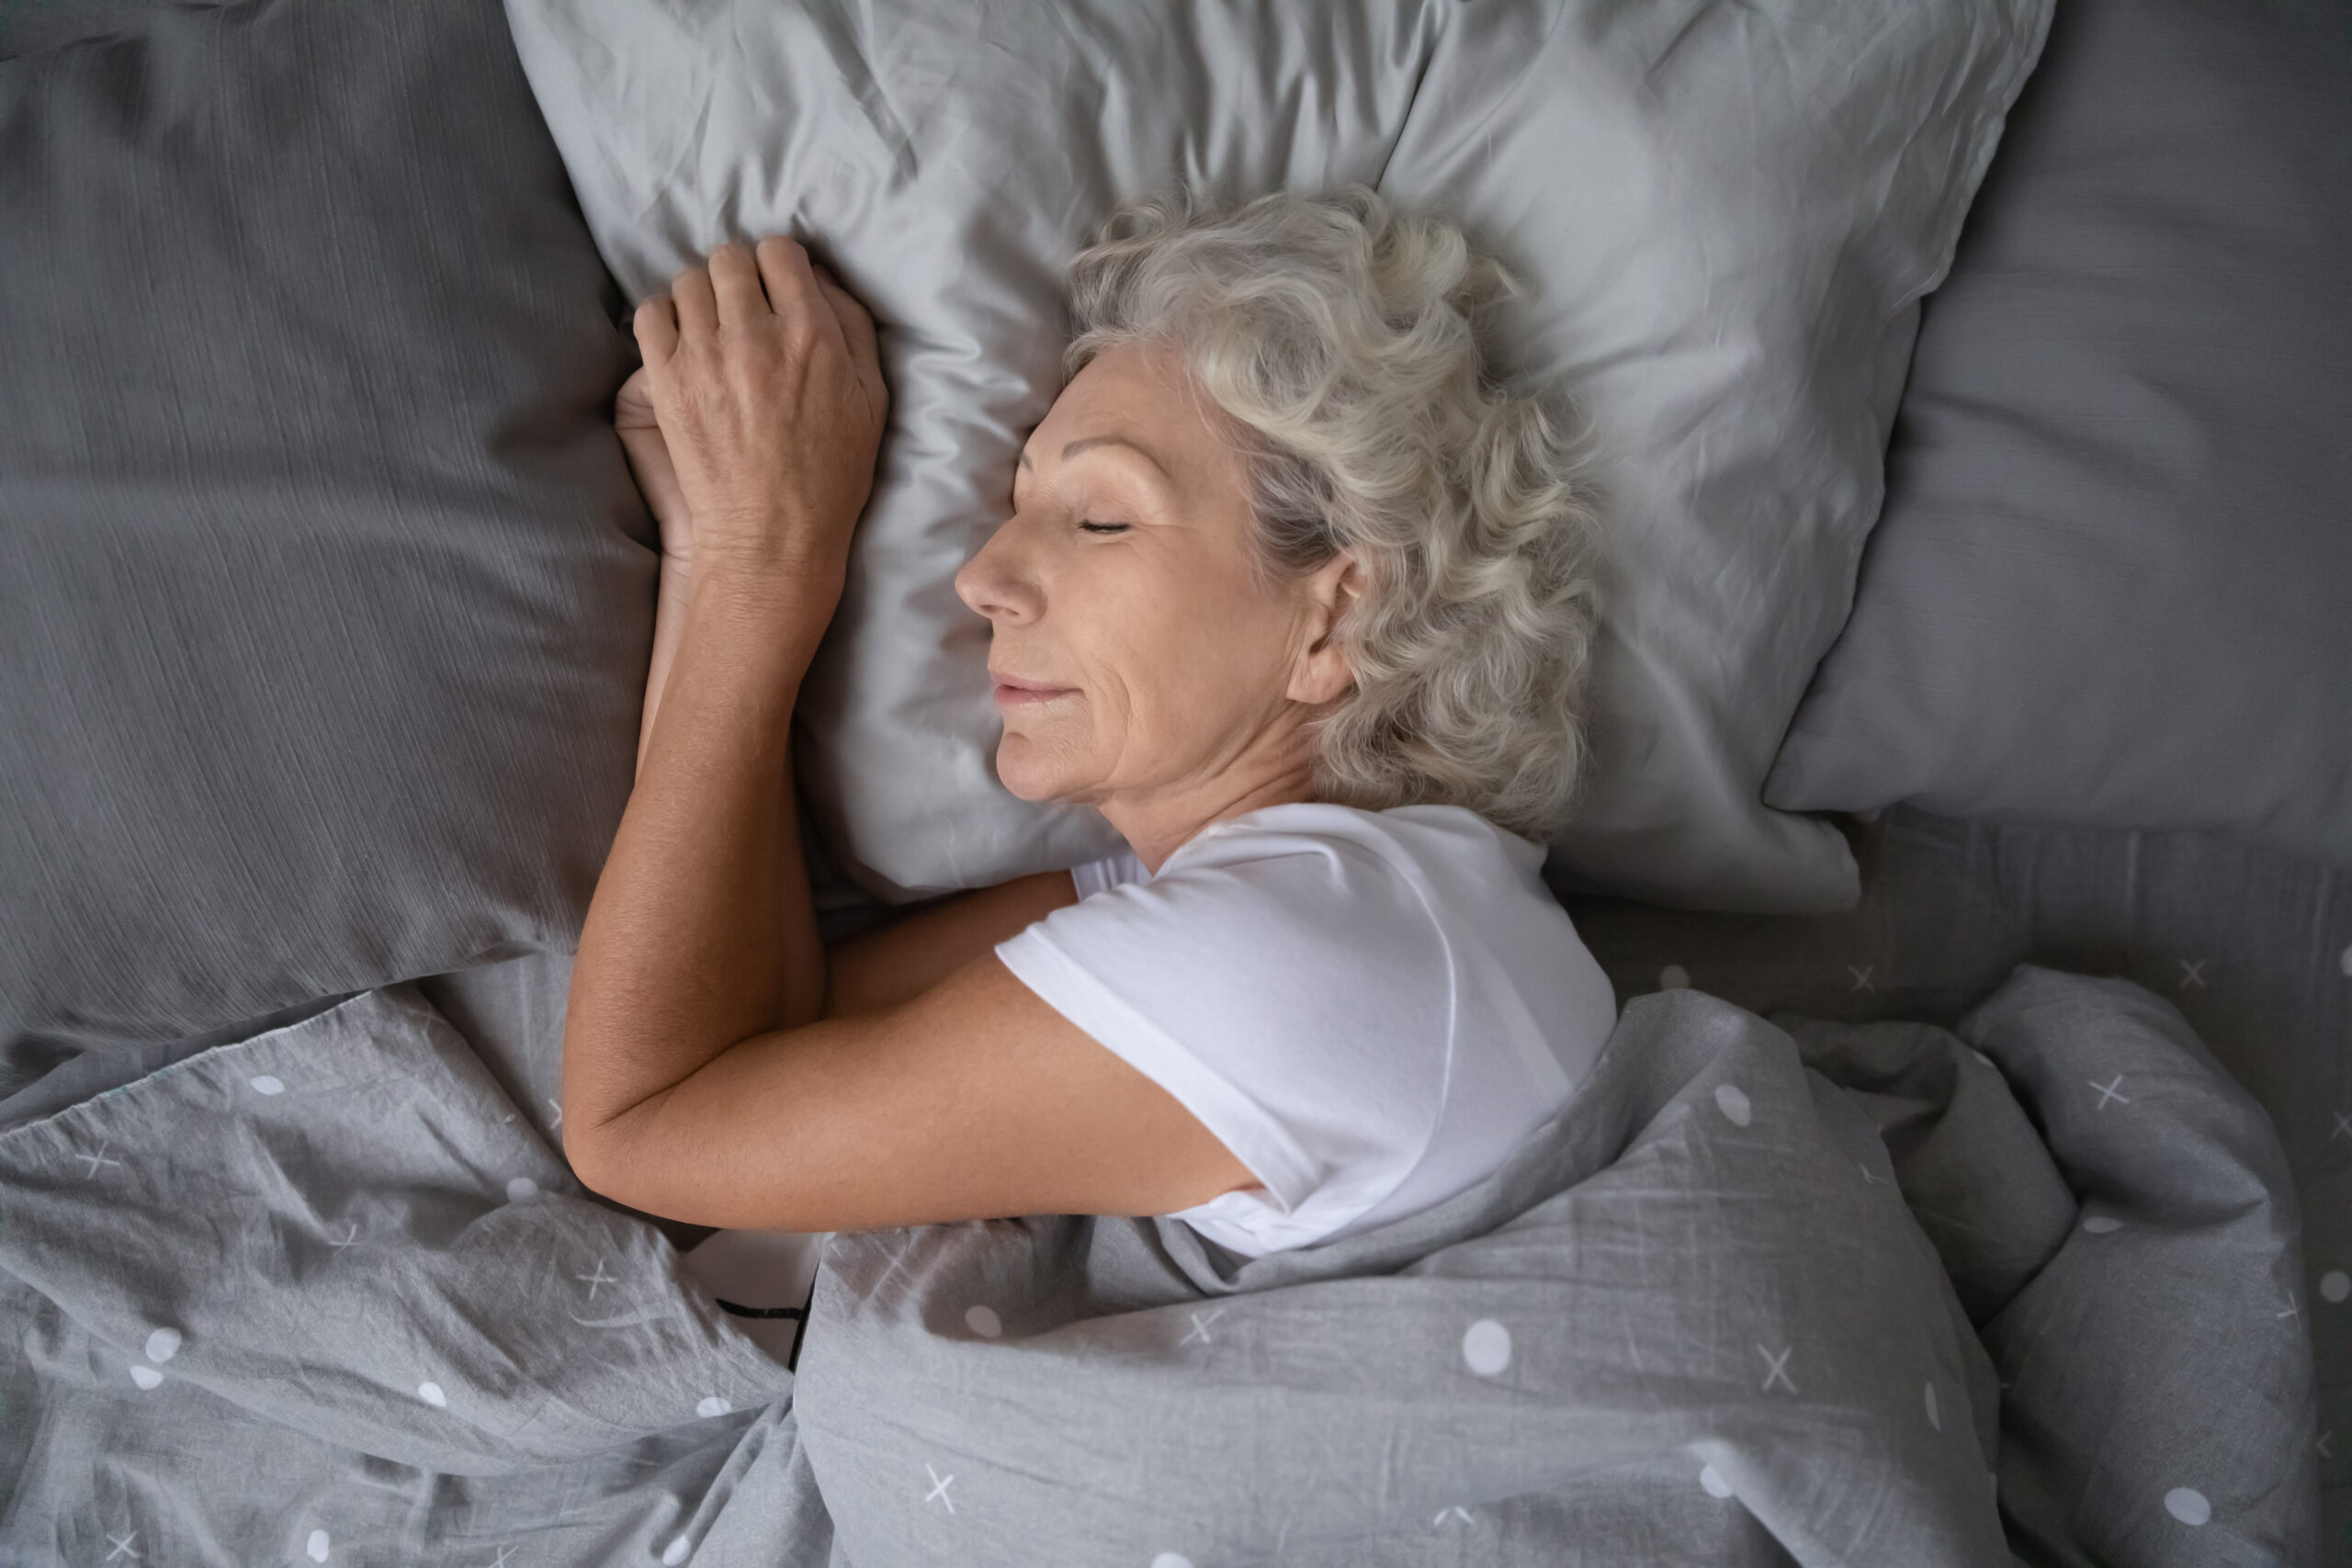 Kuna me magame ligi kolmandiku oma elust, on unel meie tervisele ja heaolule äärmiselt suur mõju. Unega seoses ringleb aga ka palju müüte, mis kasu asemel pigem